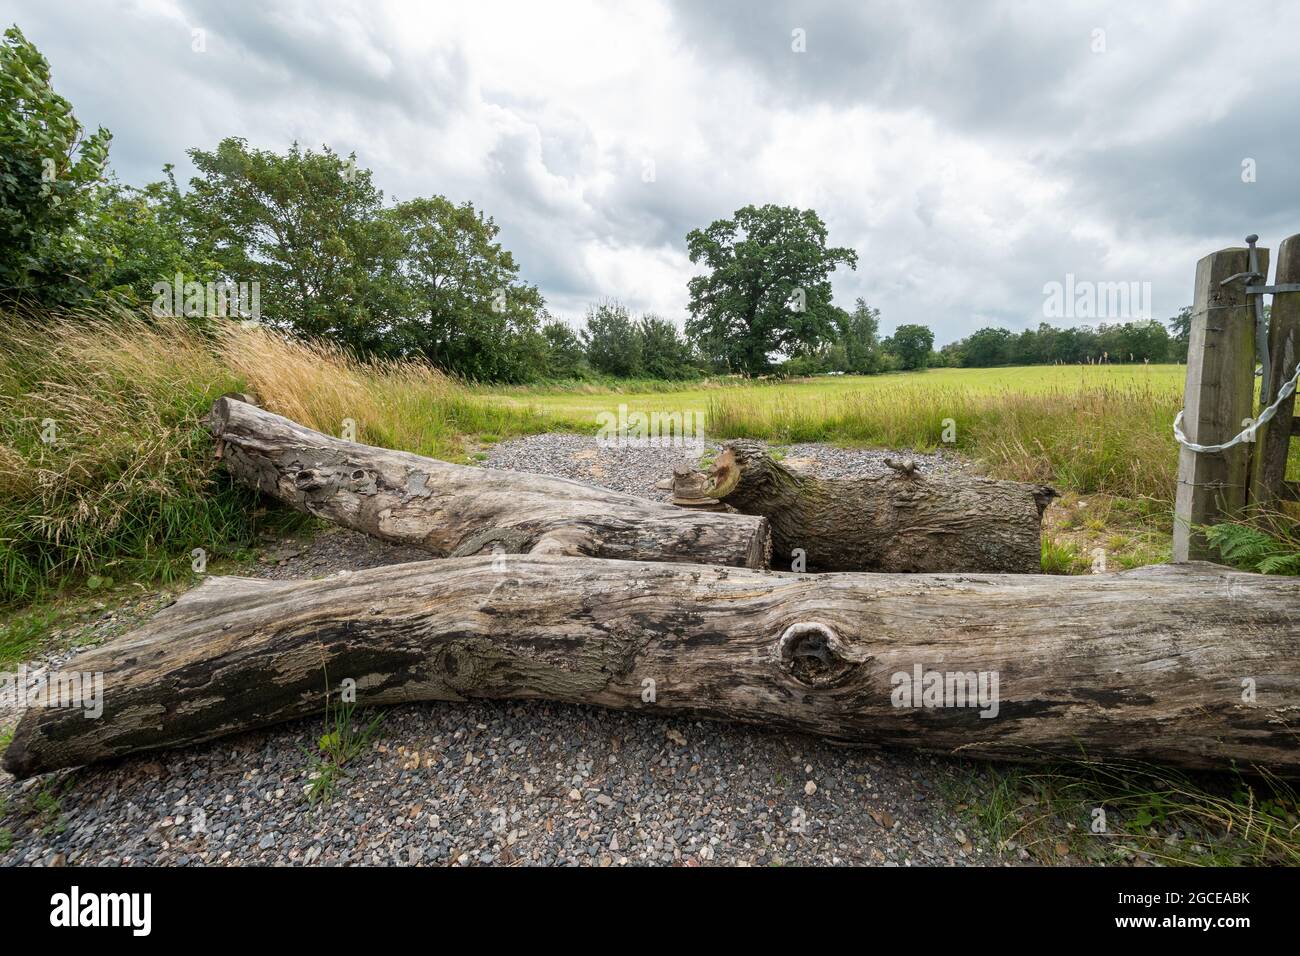 Tronchi di alberi o tronchi attraverso l'ingresso di un campo come precauzione di sicurezza, prevenzione della criminalità rurale, Regno Unito Foto Stock